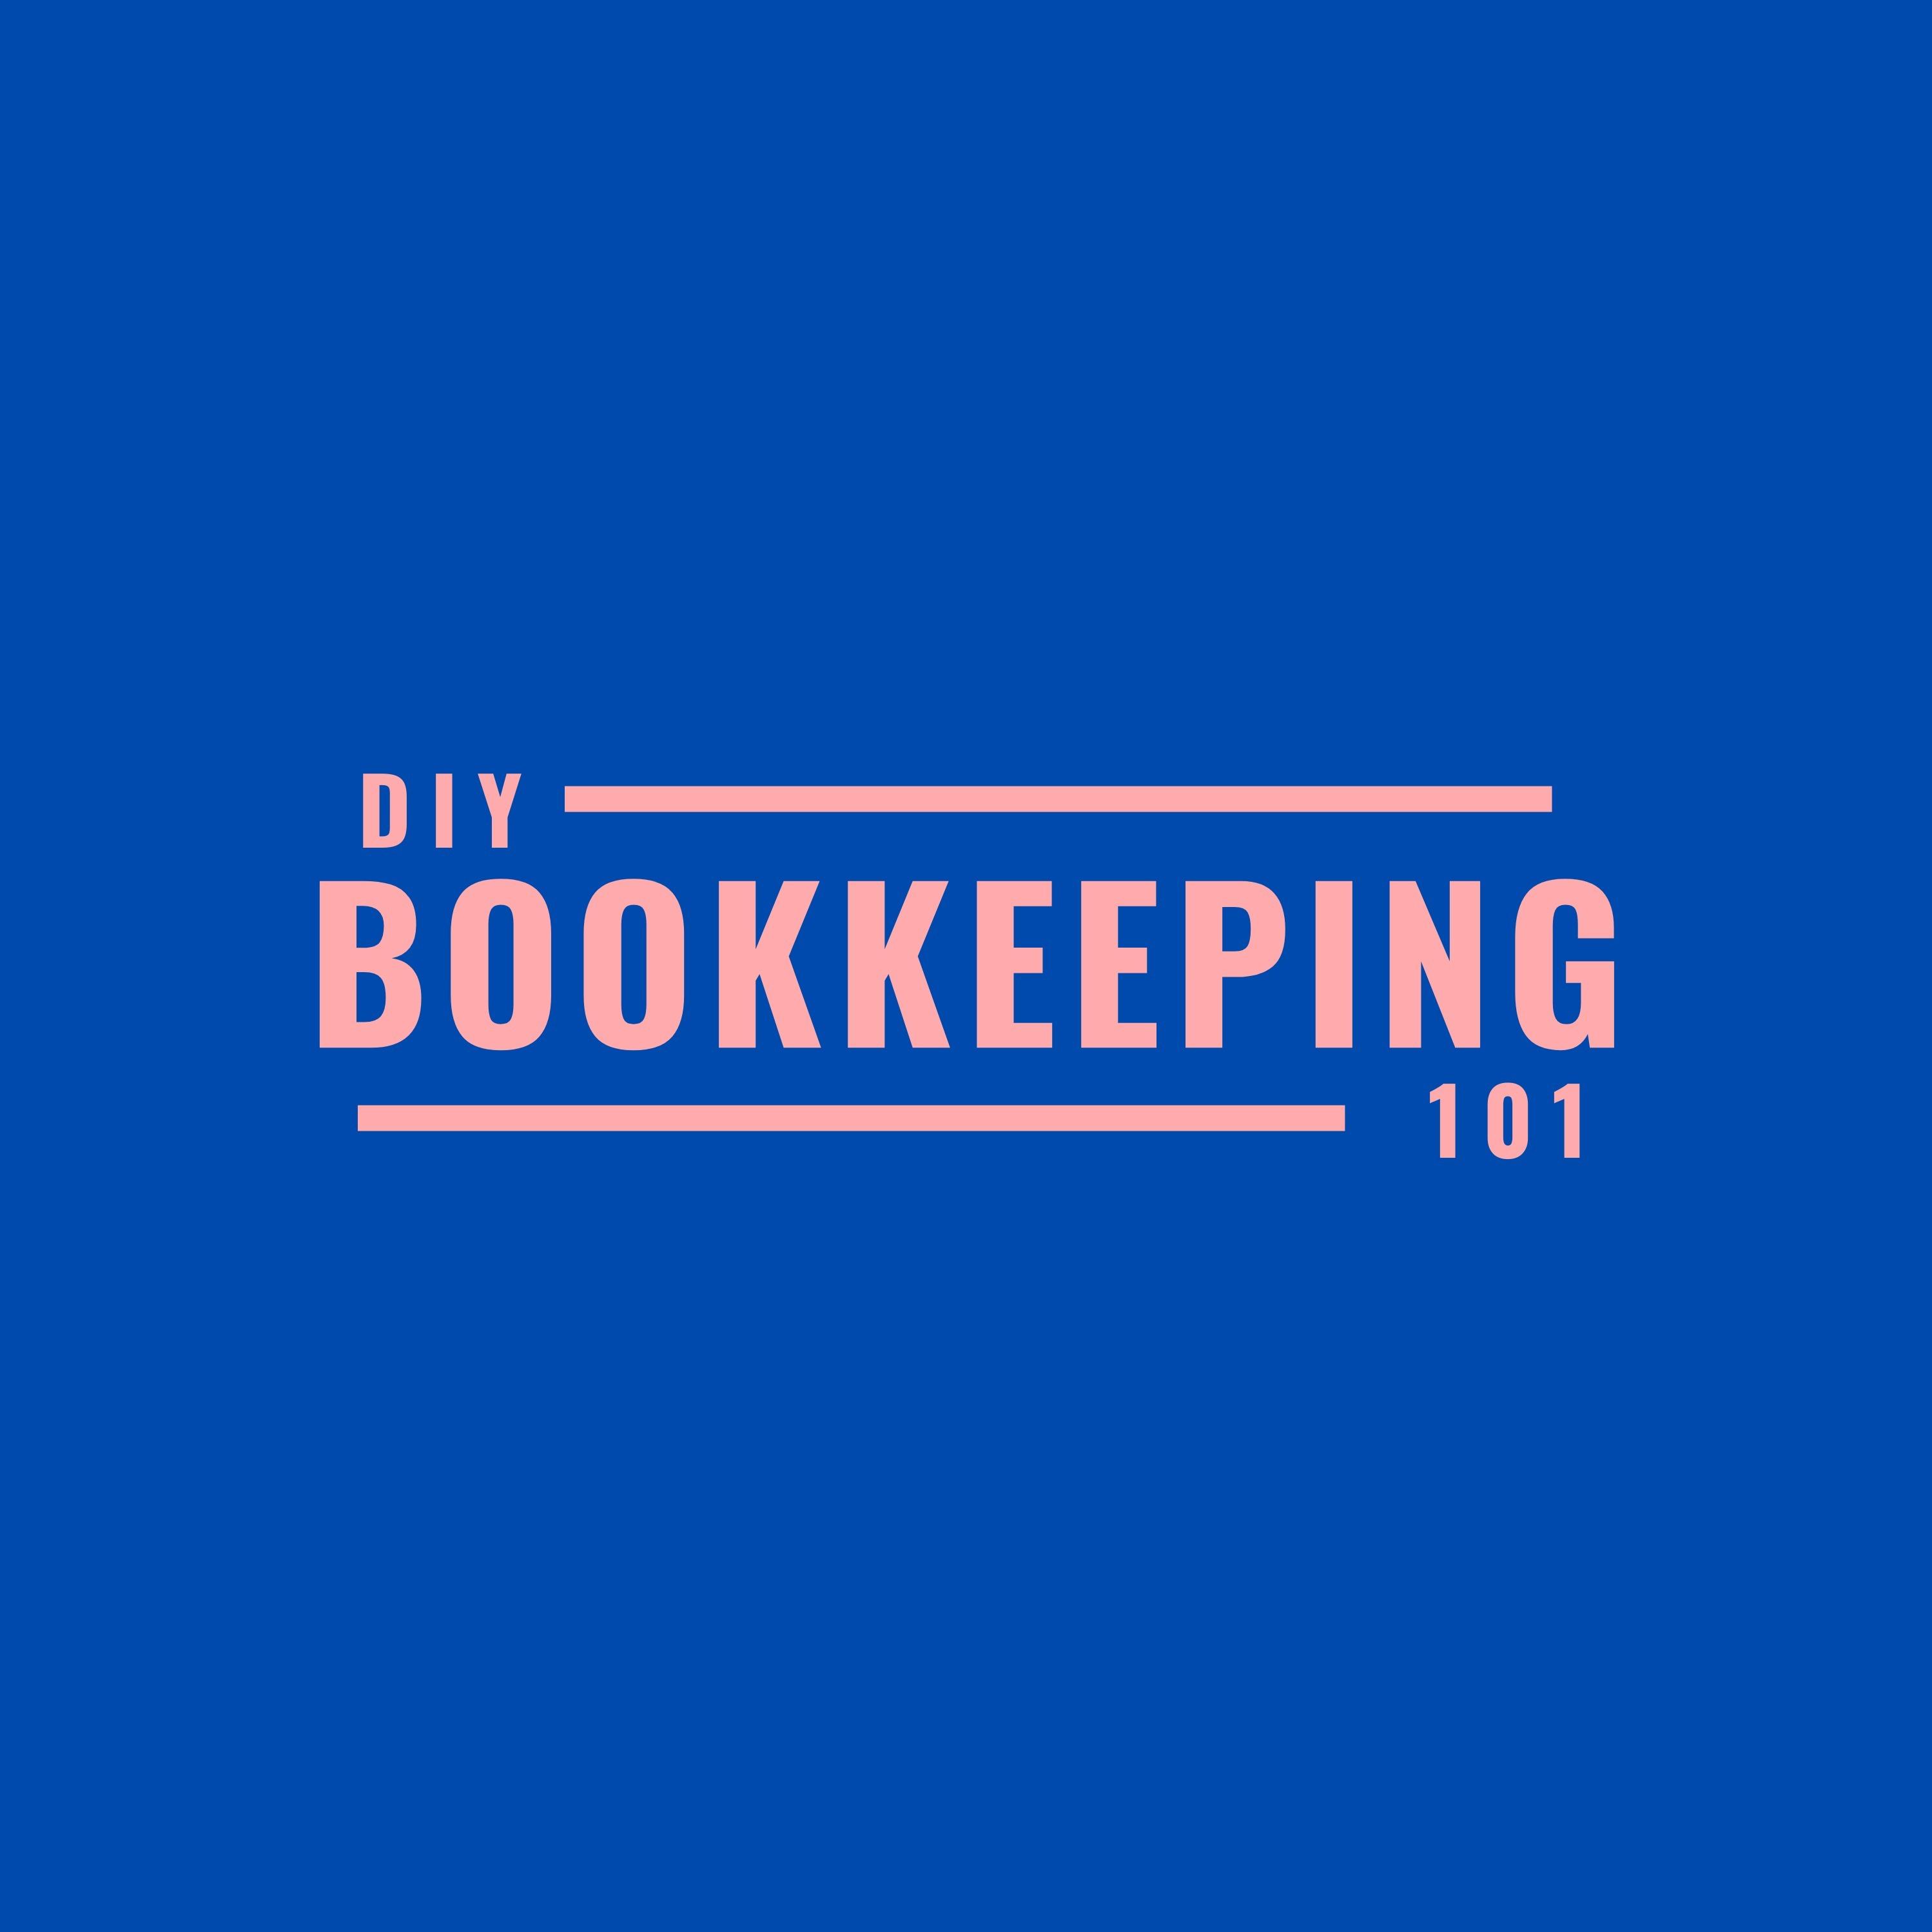 DIY Bookkeeping 101